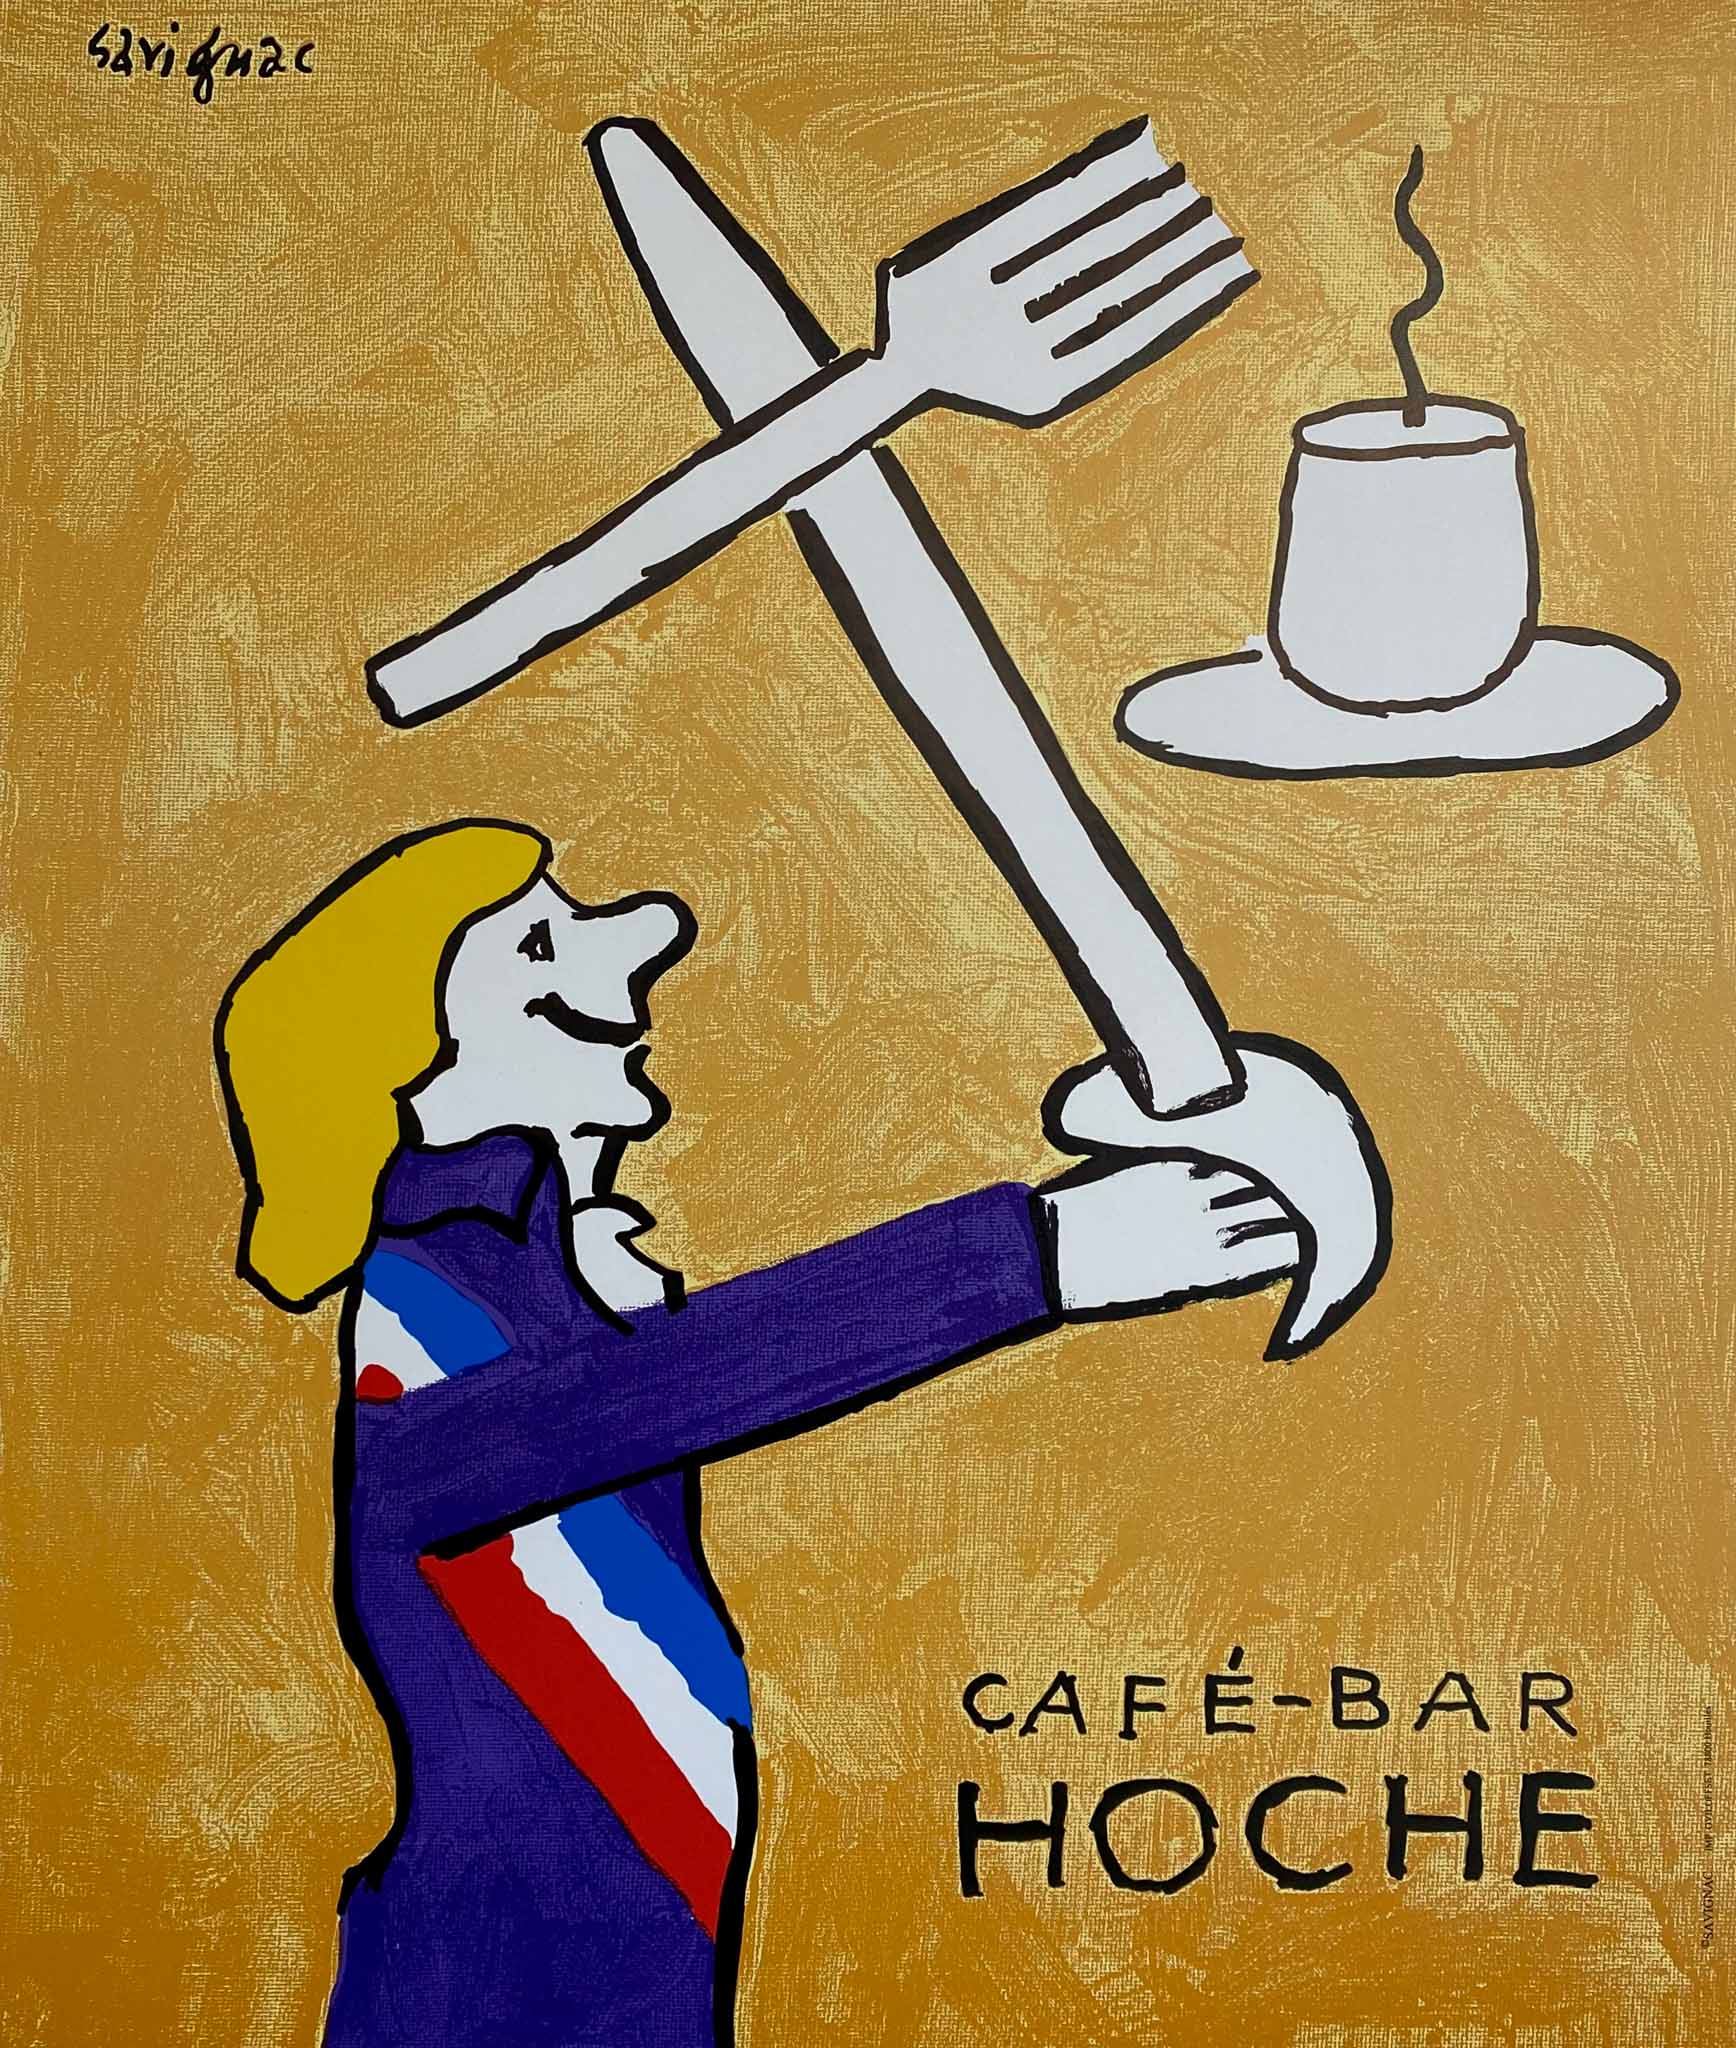 Affiche originale de Raymond Savignac dessinée en 2001 pour promouvoir le Café-Bar Hoche          Savignac était une figure éminente de la scène de l'art et de l'affiche à Paris,  du milieu des années 50 jusqu'à sa mort en 2002.